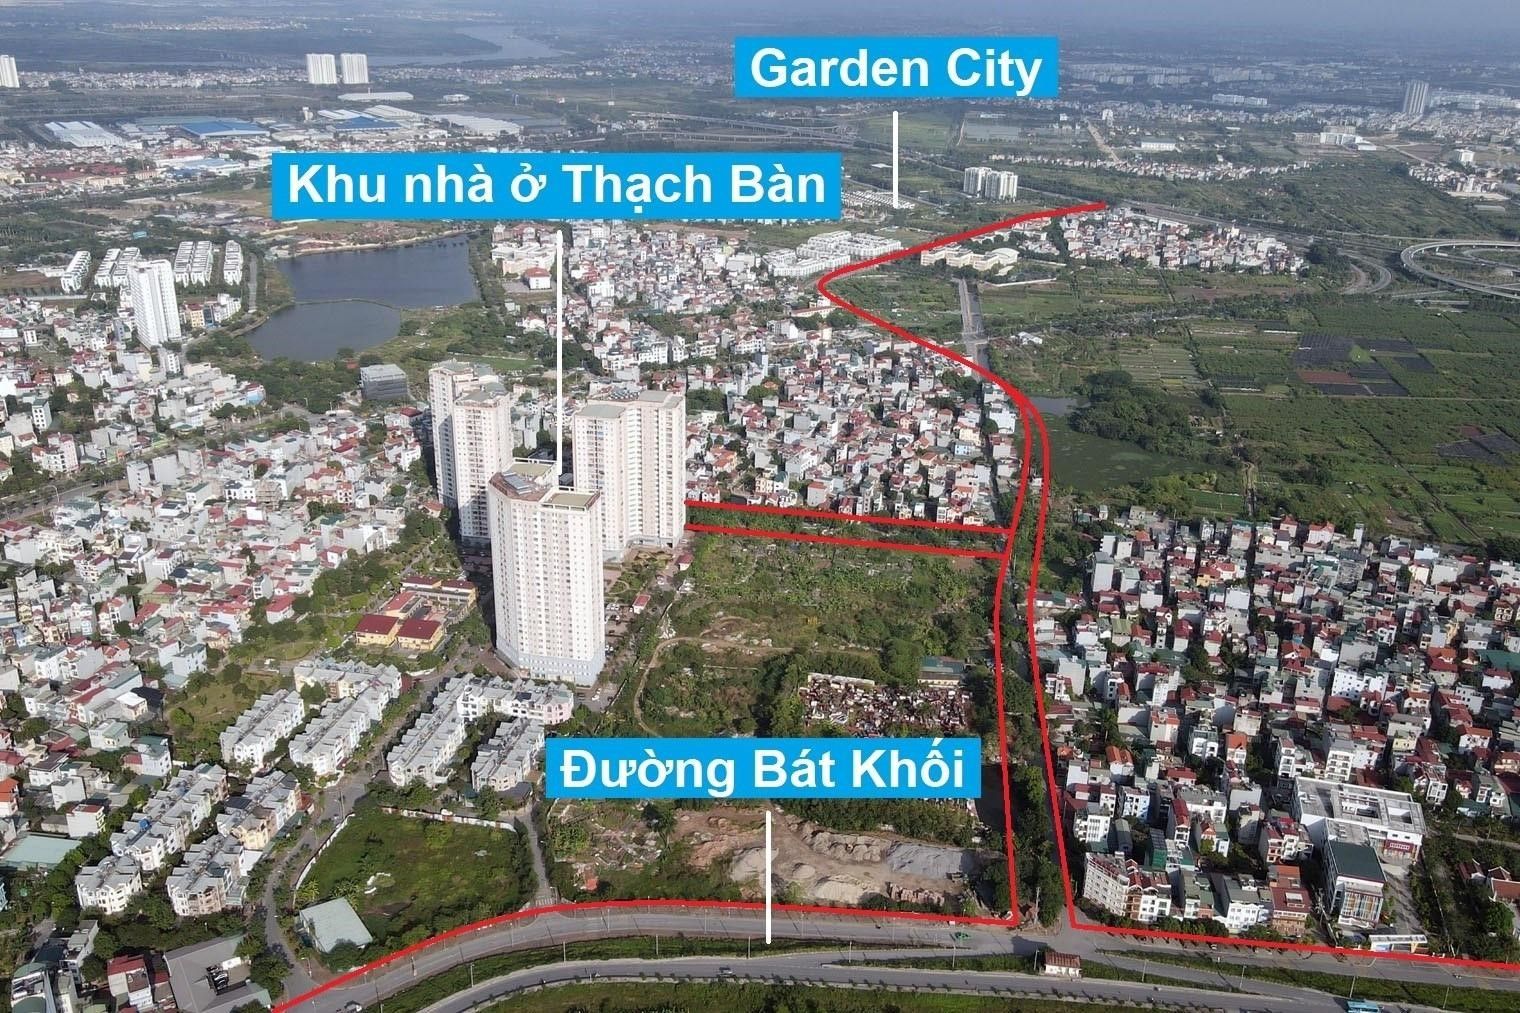 Giá bán nhà biệt thự, liền kề ở khu nhà ở Thạch Bàn, quận Long Biên hiện tại là bao nhiêu?